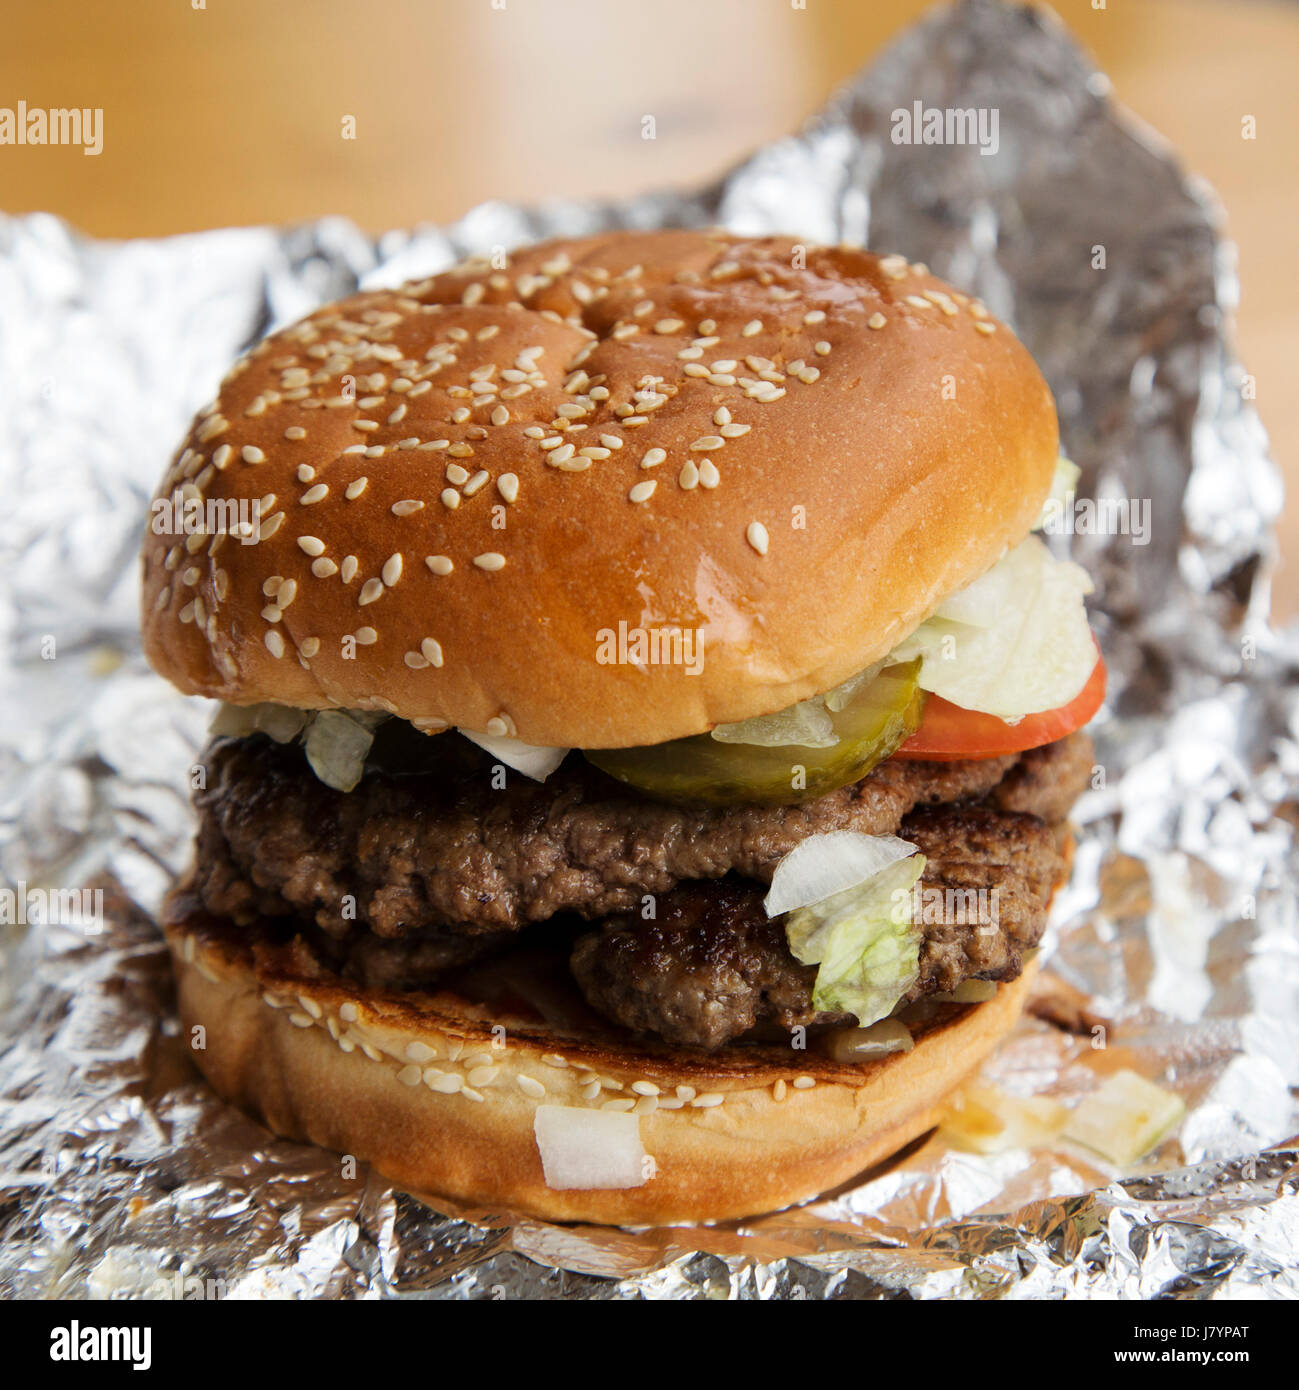 Ein Beefburger wird in einem bestreute Brötchen serviert. Sesam oben das Brot Brötchen. Stockfoto